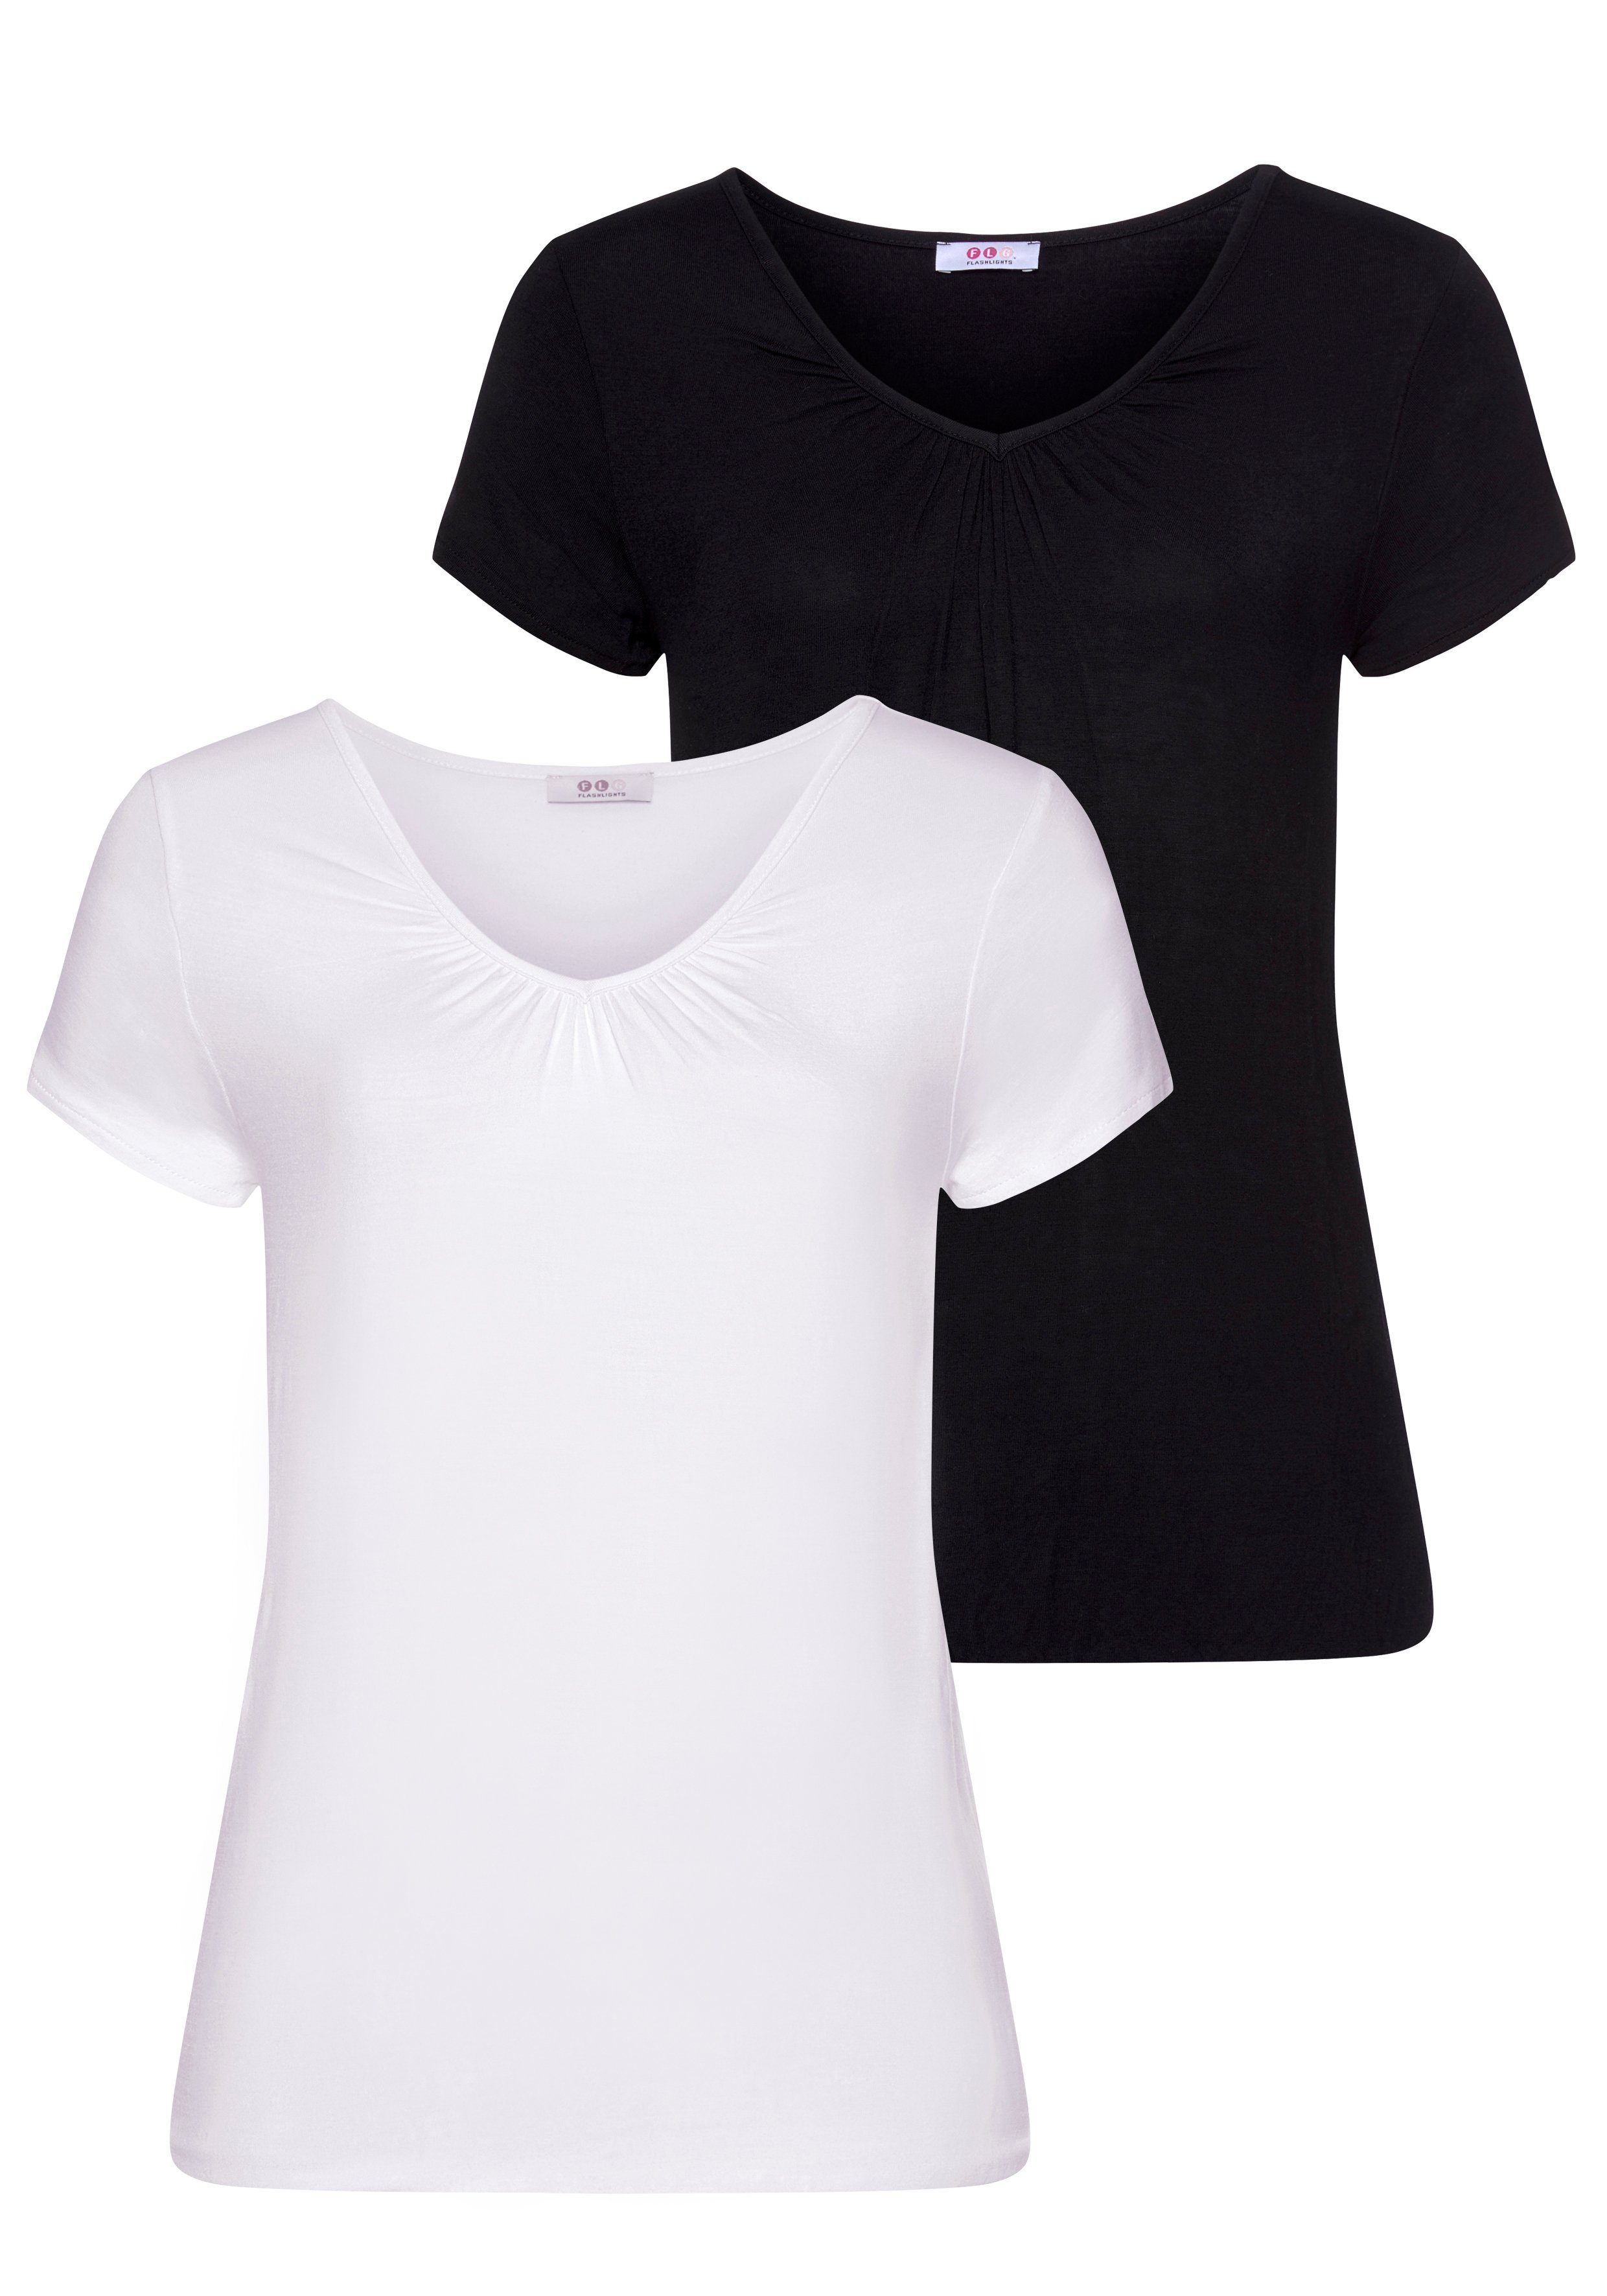 Flashlights T-Shirt (Packung, 2er-Pack) Mit leichtem Flügelarm weiß, schwarz